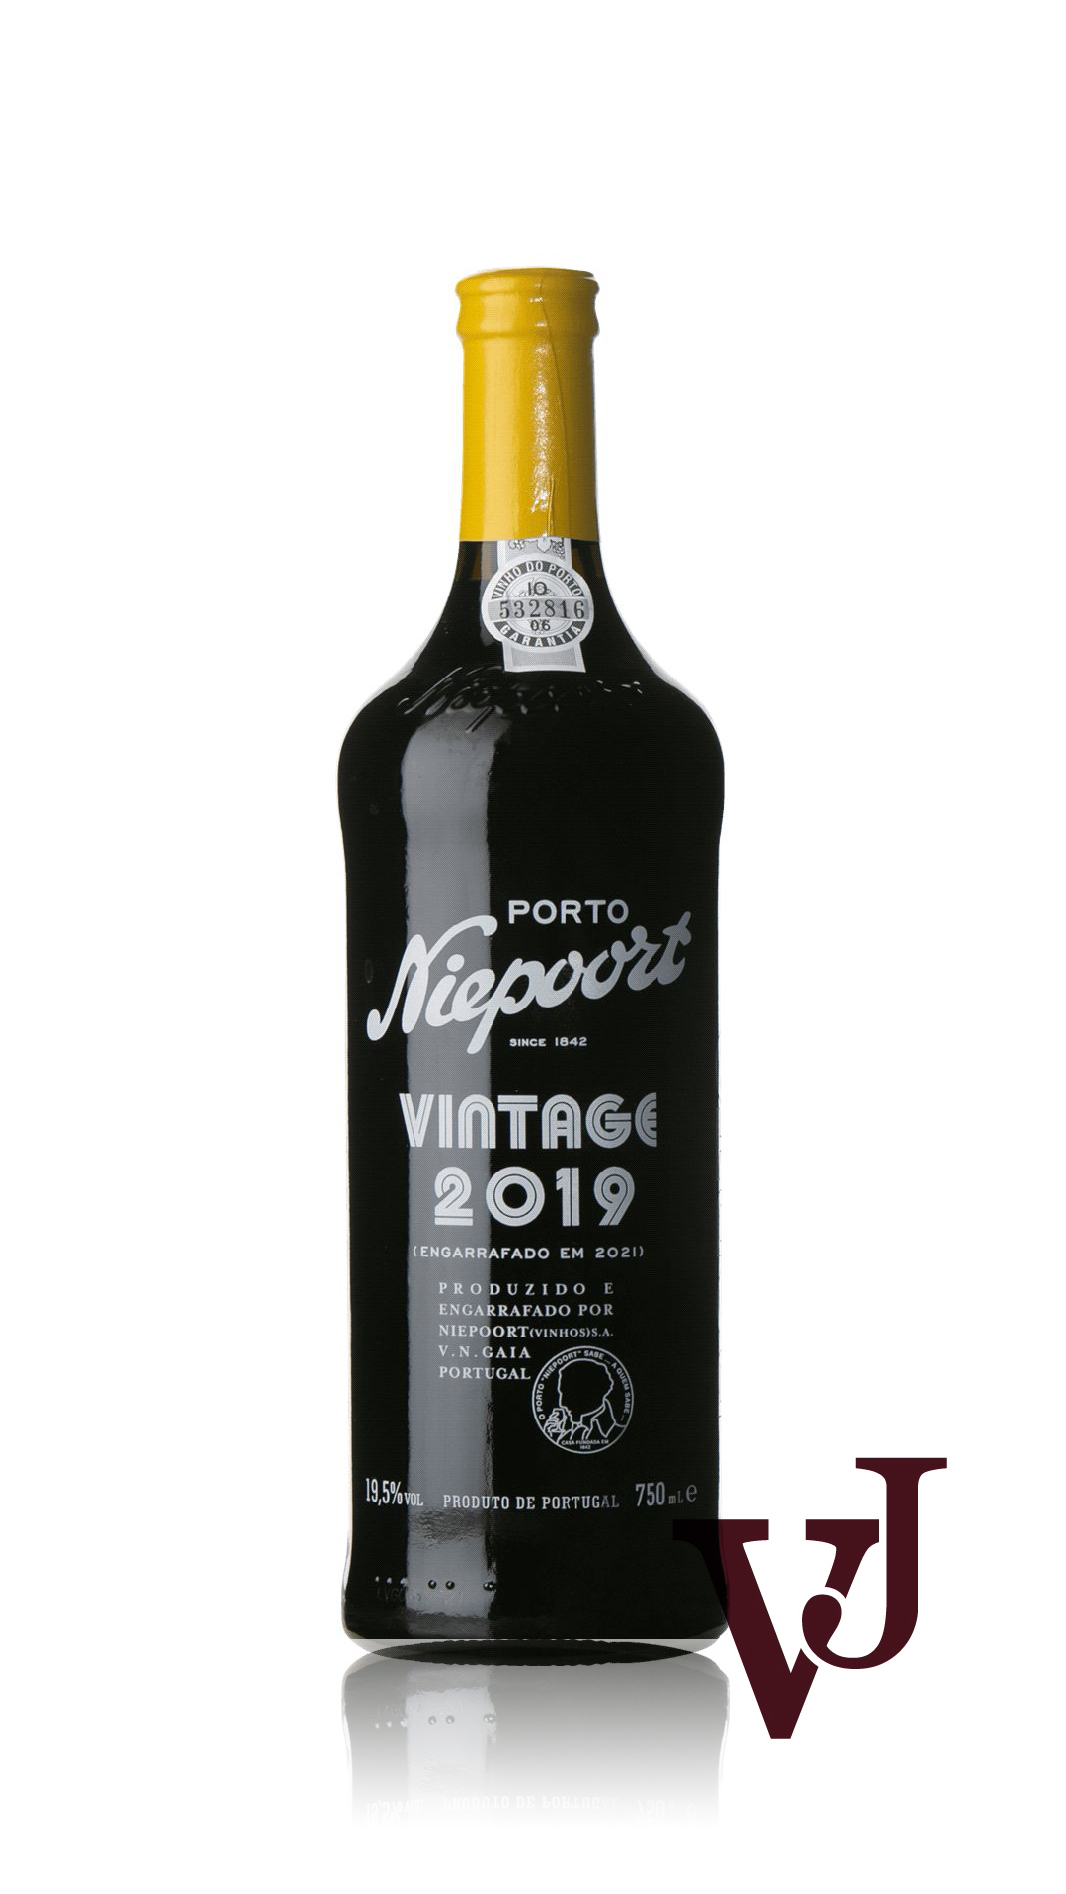 Övrigt vin - Niepoort Vintage Port Niepoort Vinhos artikel nummer 9571501 från producenten Niepoort från området Portugal